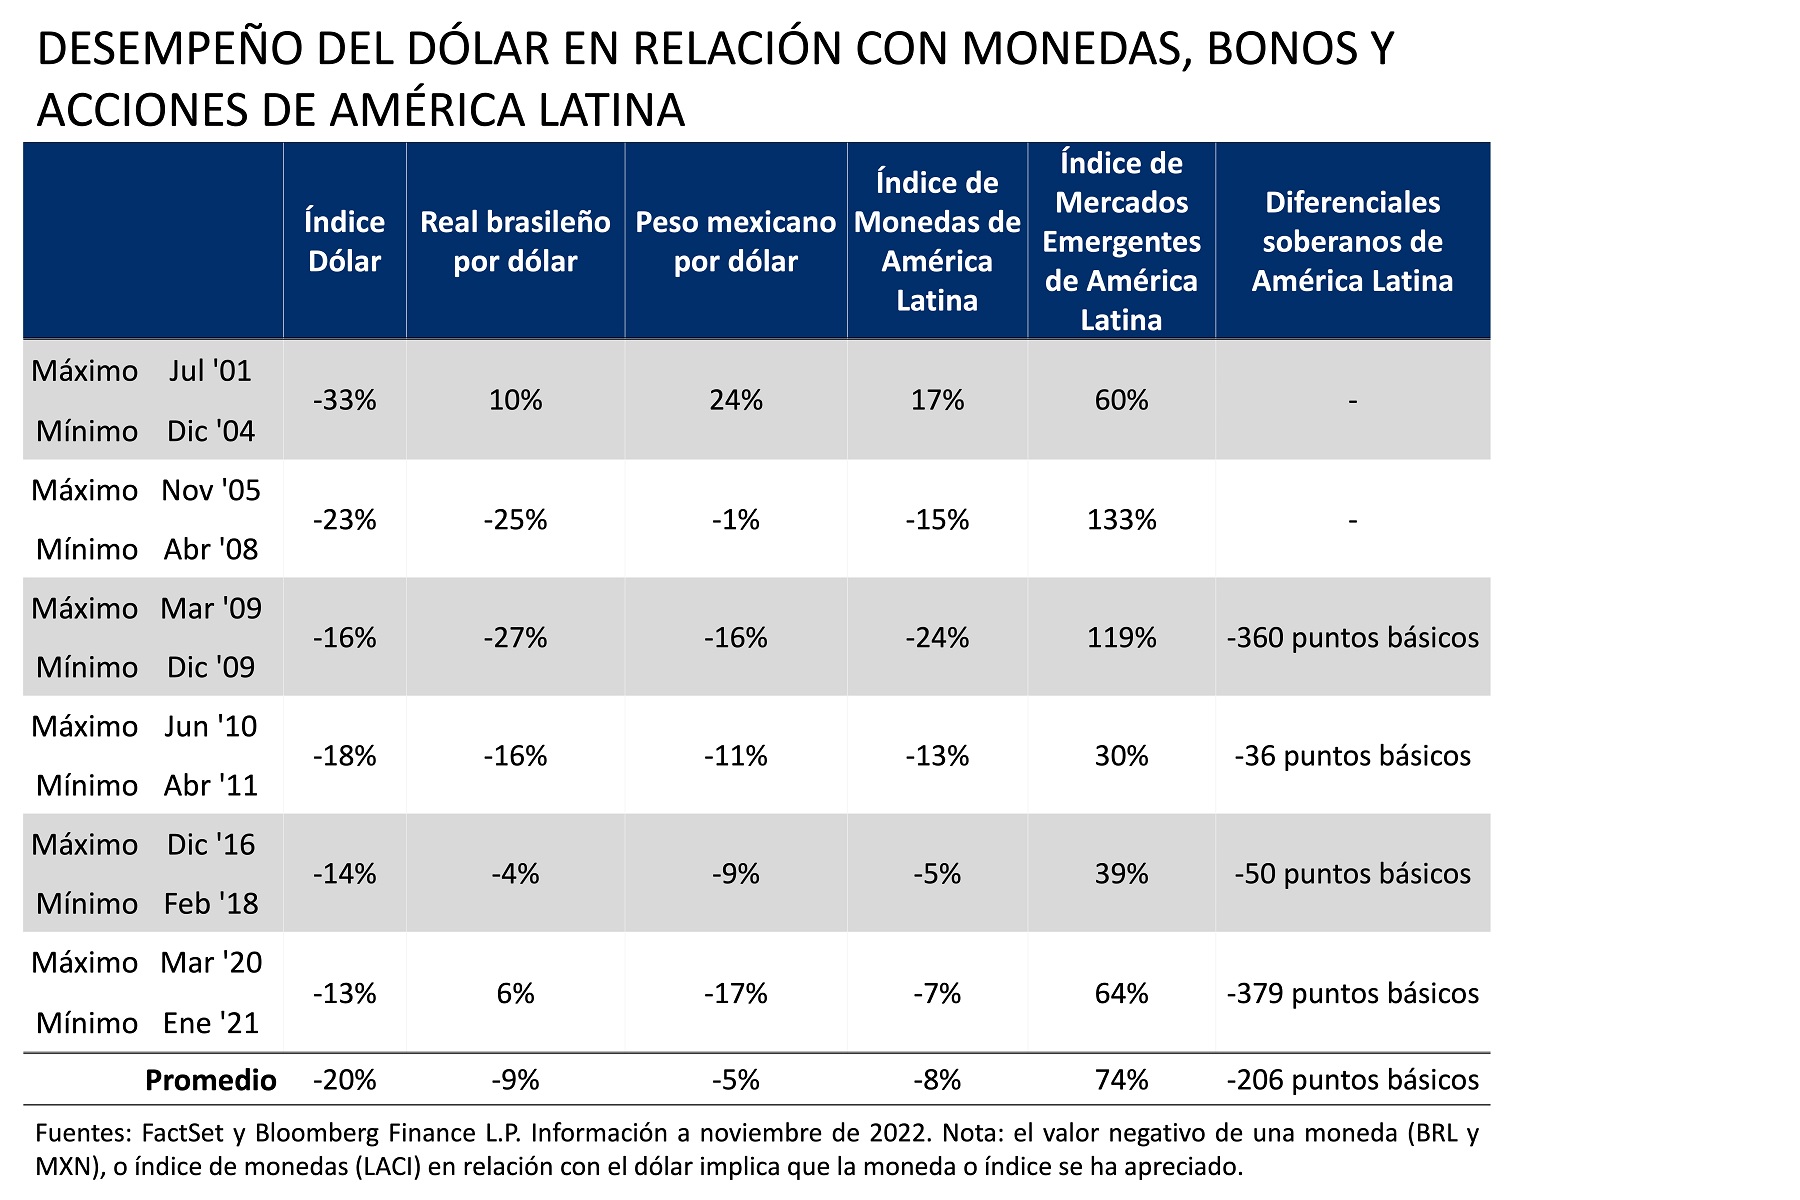 Desempeño del dólar en relación con monedas, bonos y acciones de américa latina